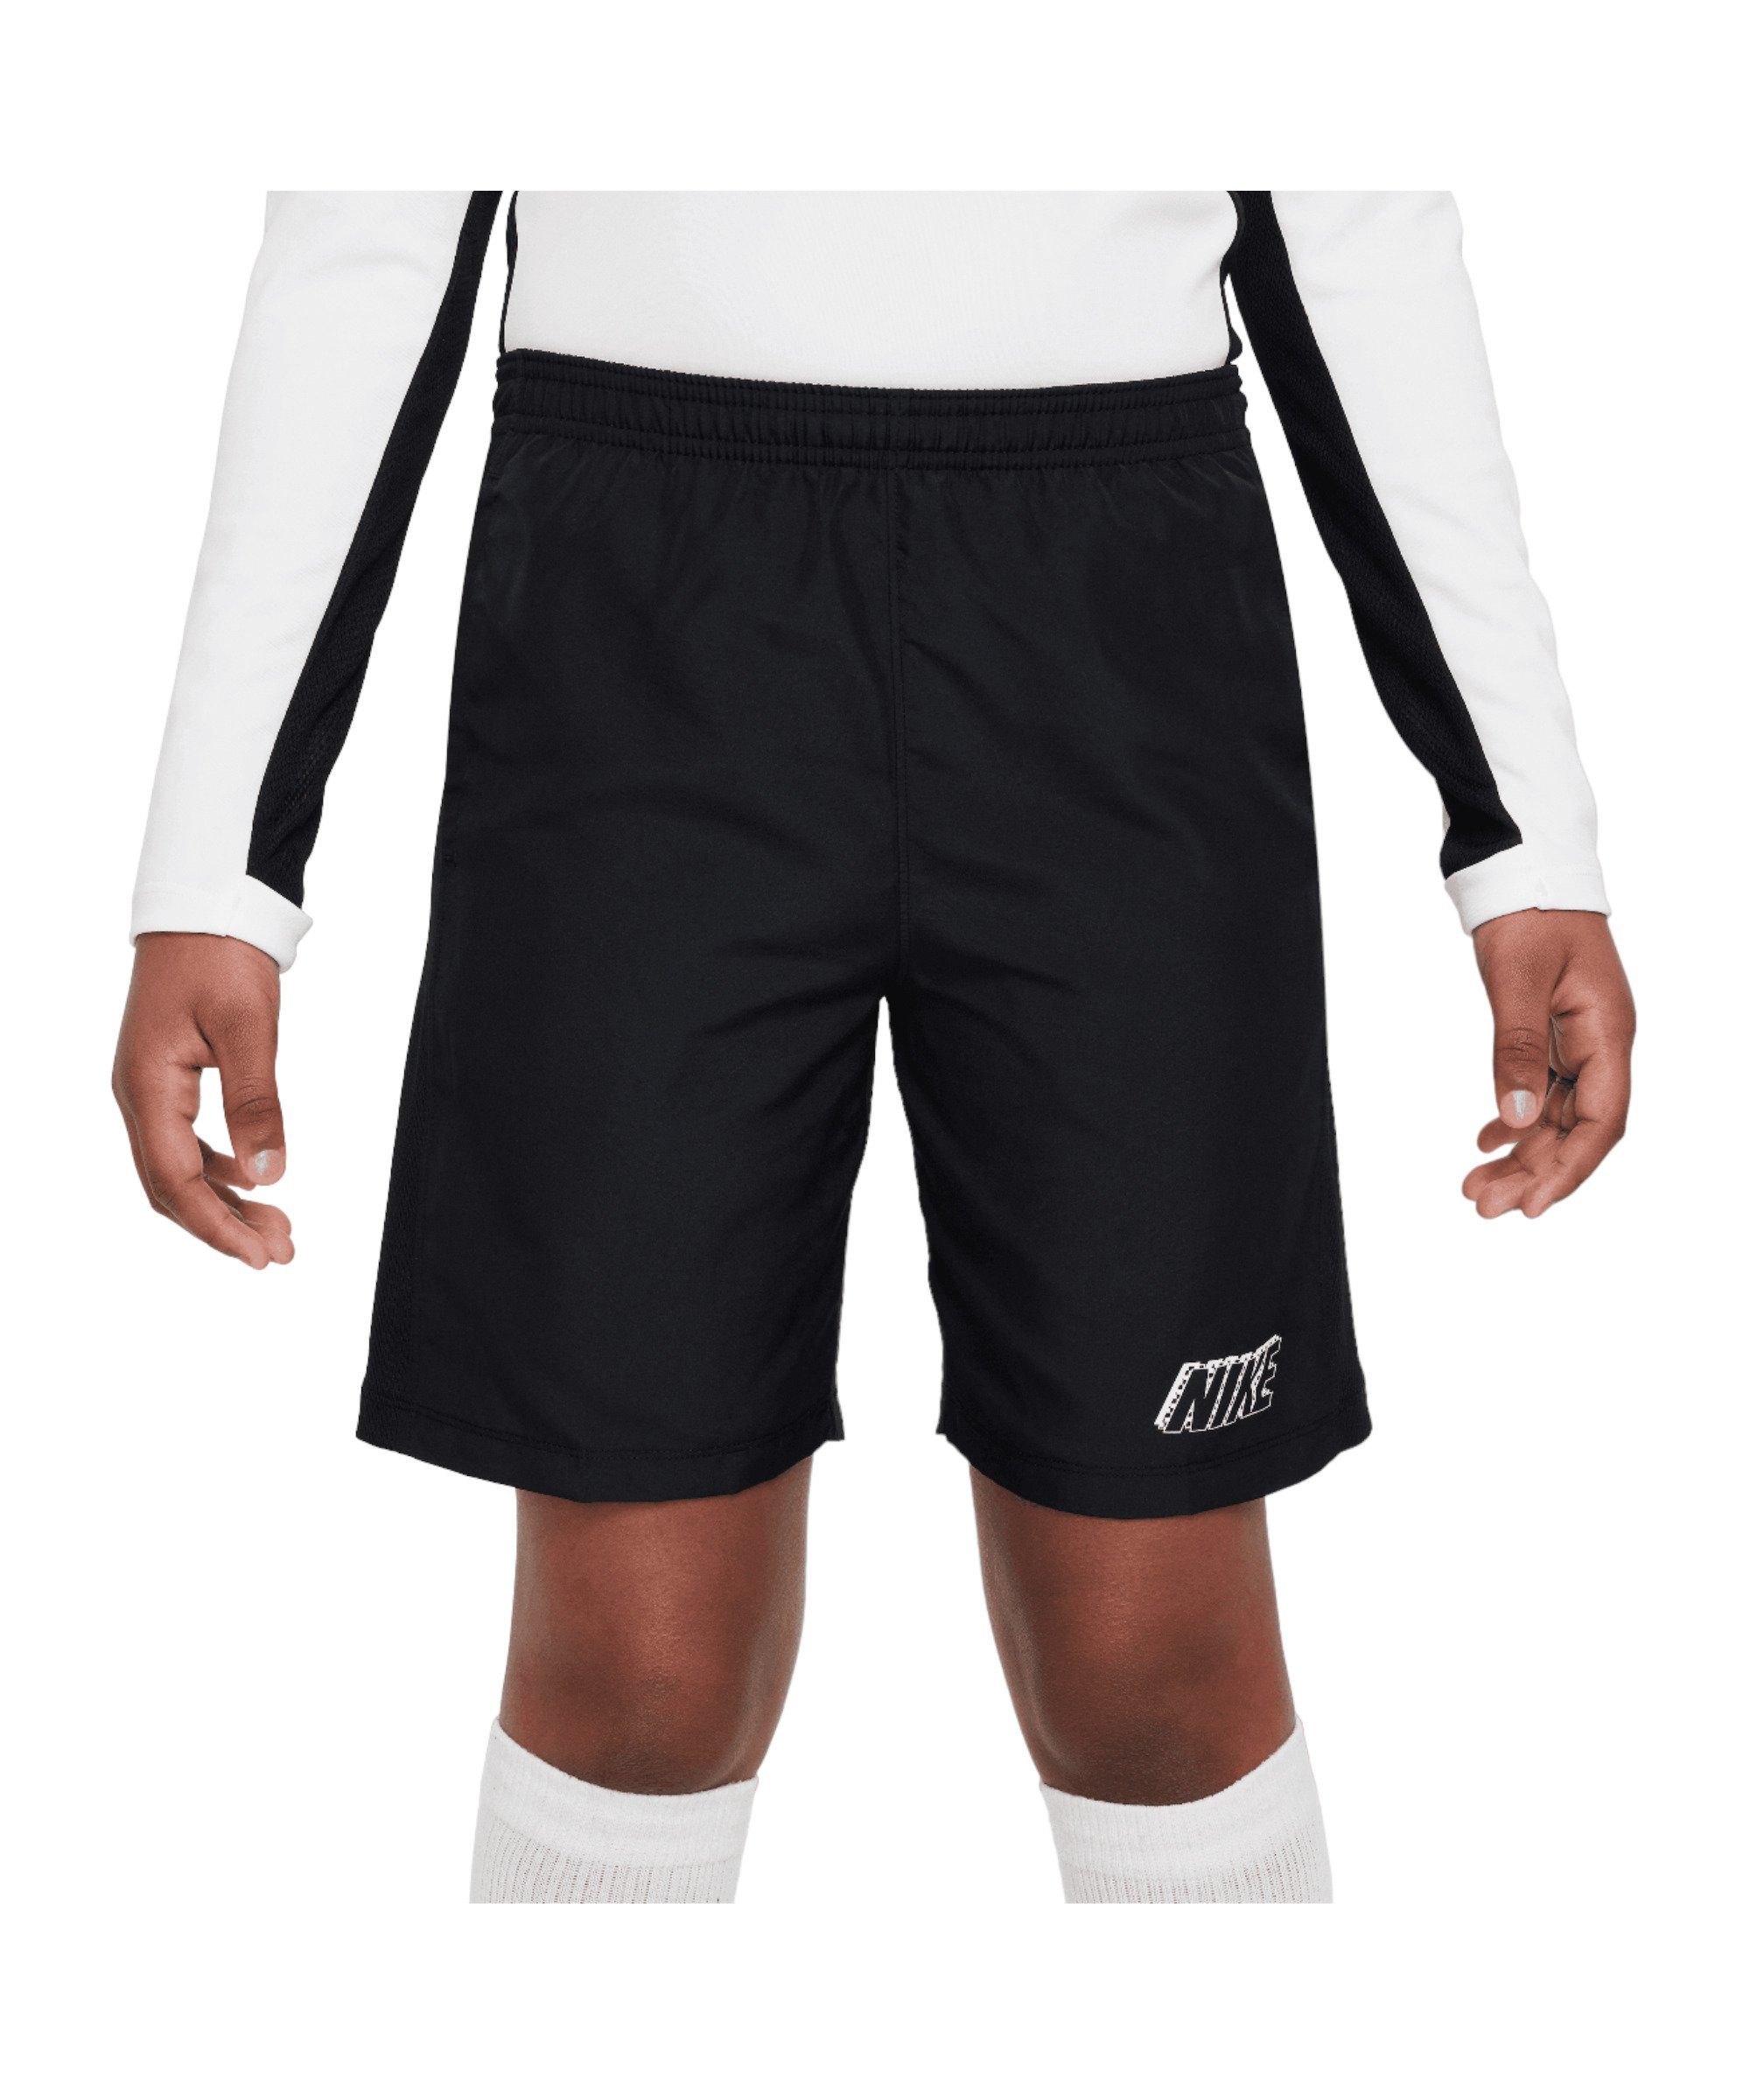 Sporthose Academy schwarzschwarzweiss Shorts Kids Nike 23